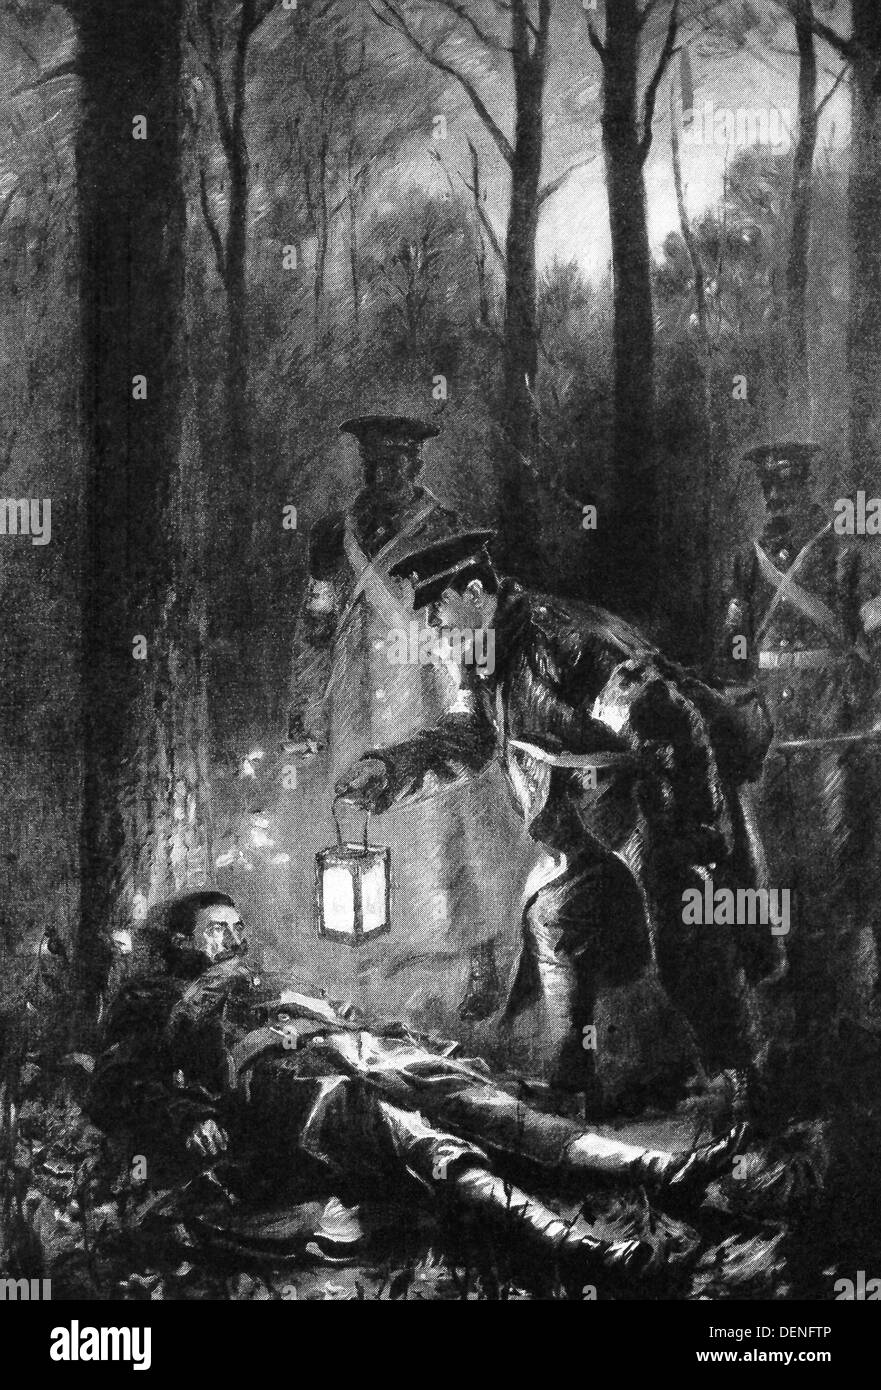 La Prima Guerra Mondiale la Croce Rossa membri del Corpo ricerca di feriti durante la notte. Qui, con la luce da loro lanterna, hanno trovato uno. Foto Stock